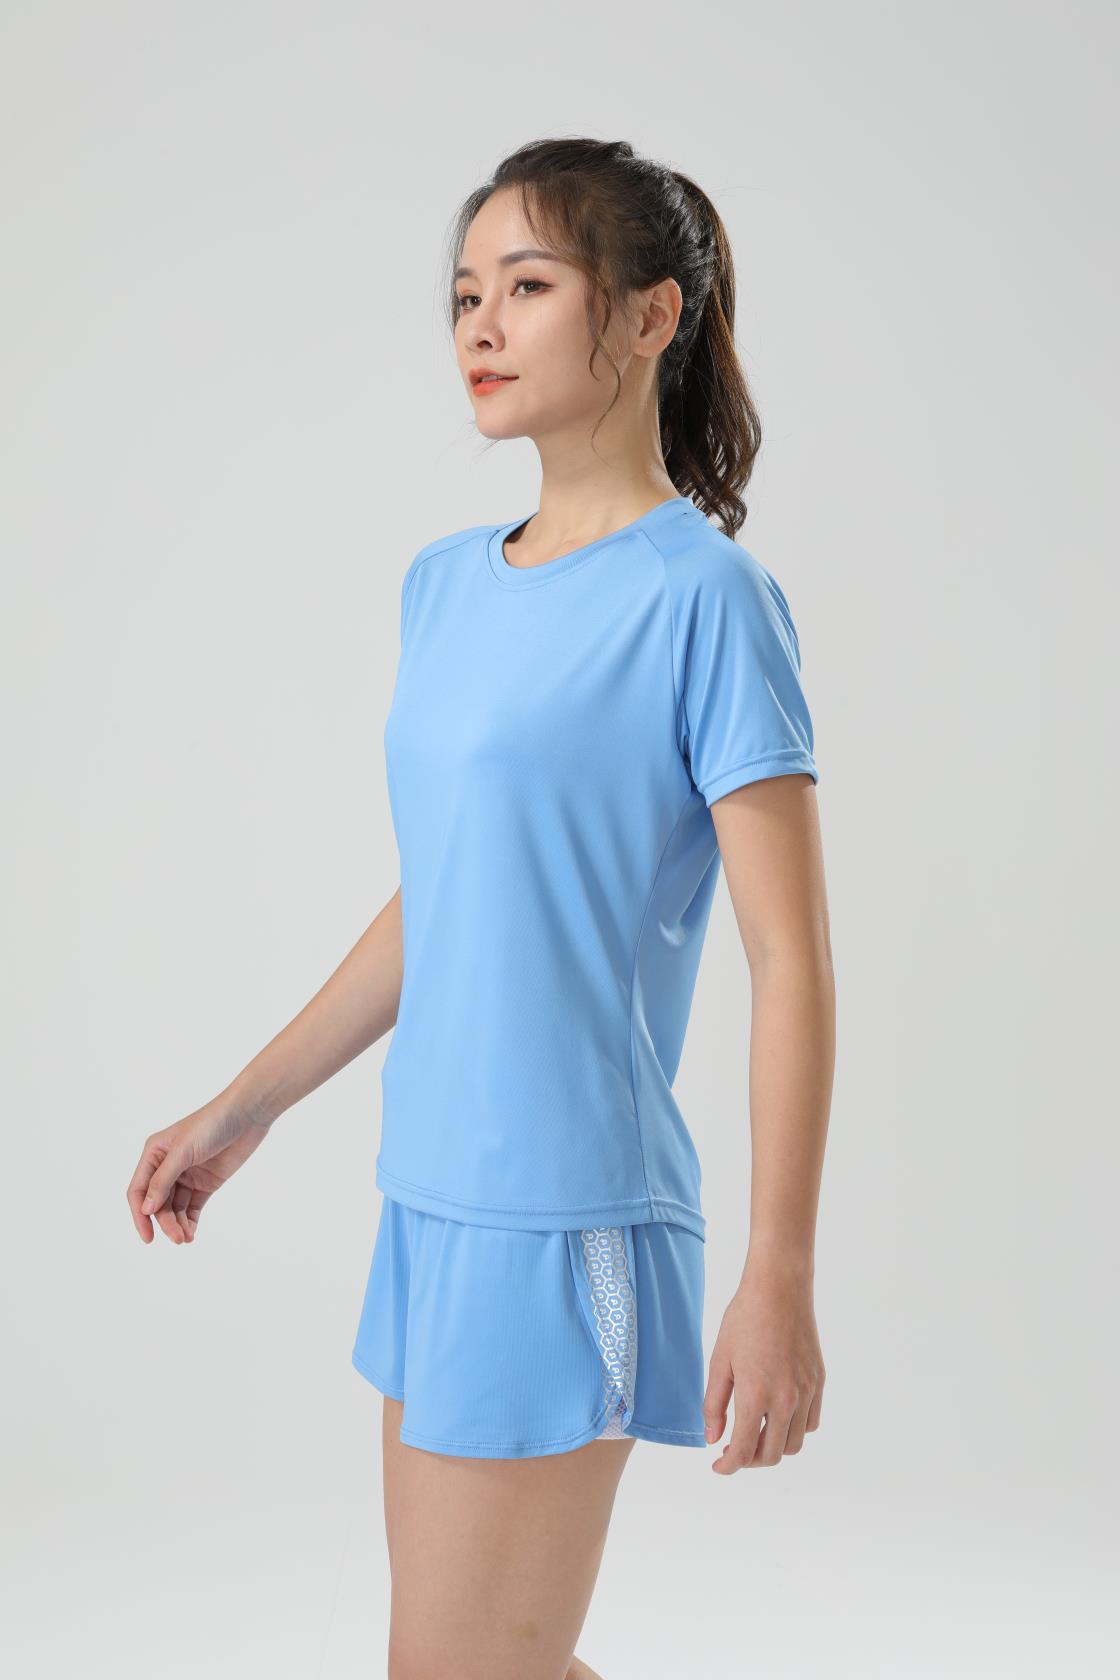 Women's Blue T Shirt 